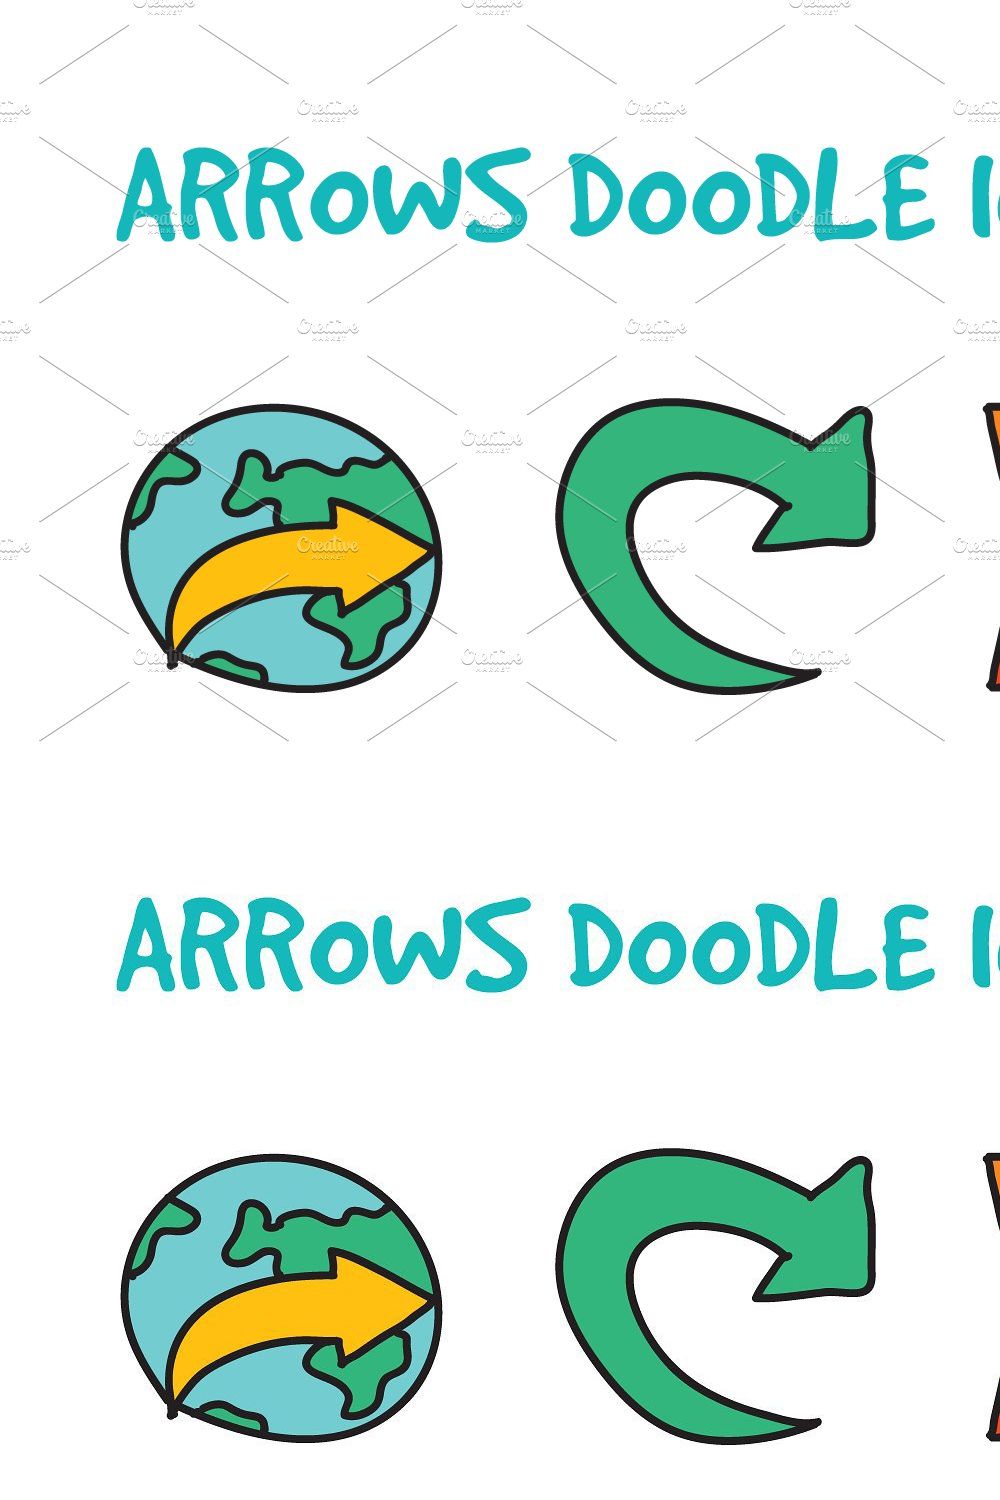 Arrows Doodle Icons Set pinterest preview image.